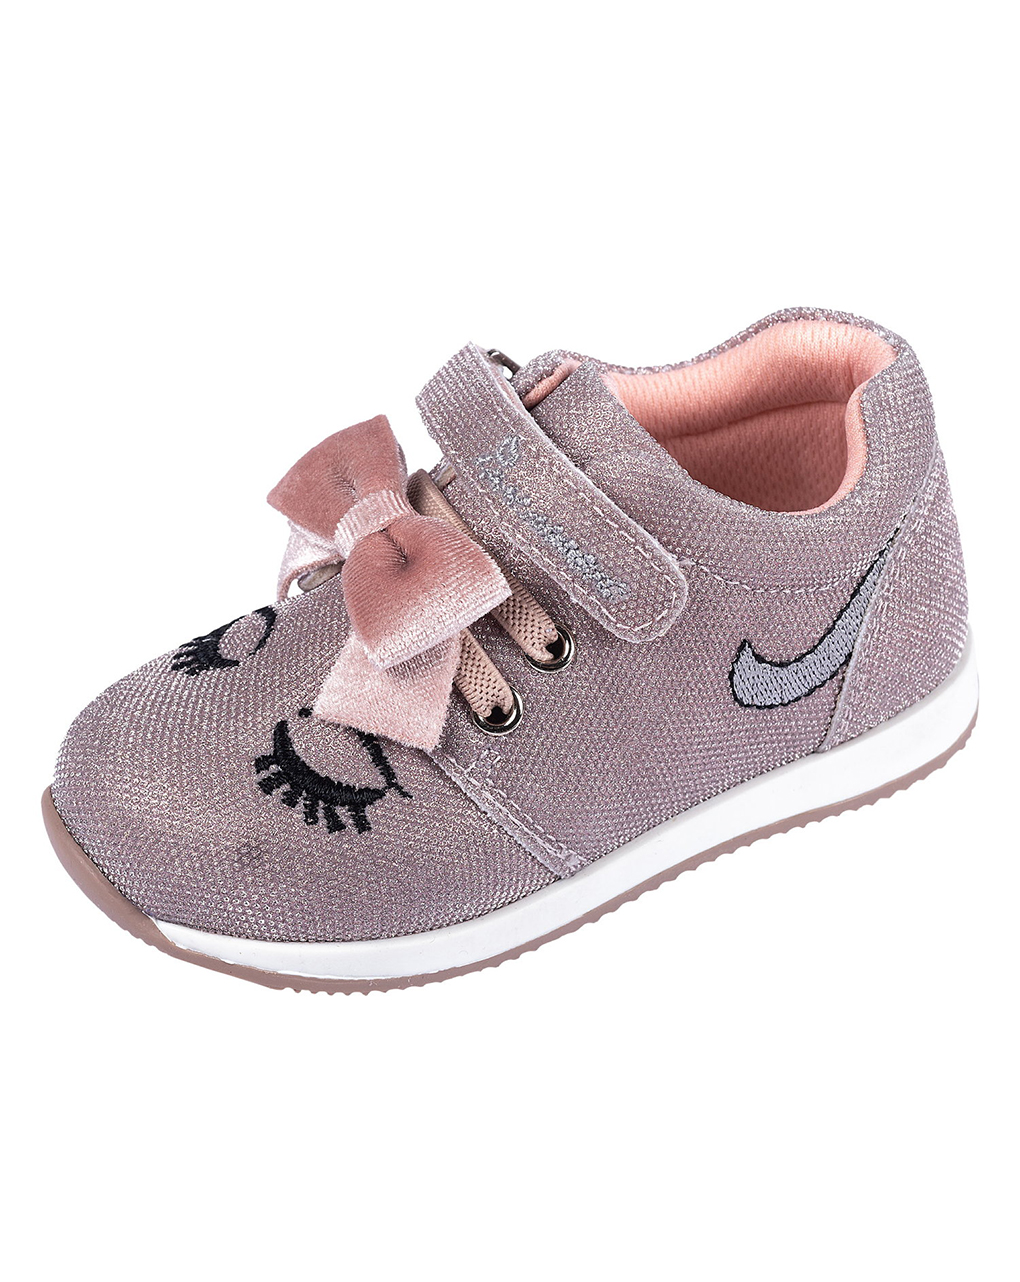 Zapato bebé niña rosa chicco fionnery - Chicco